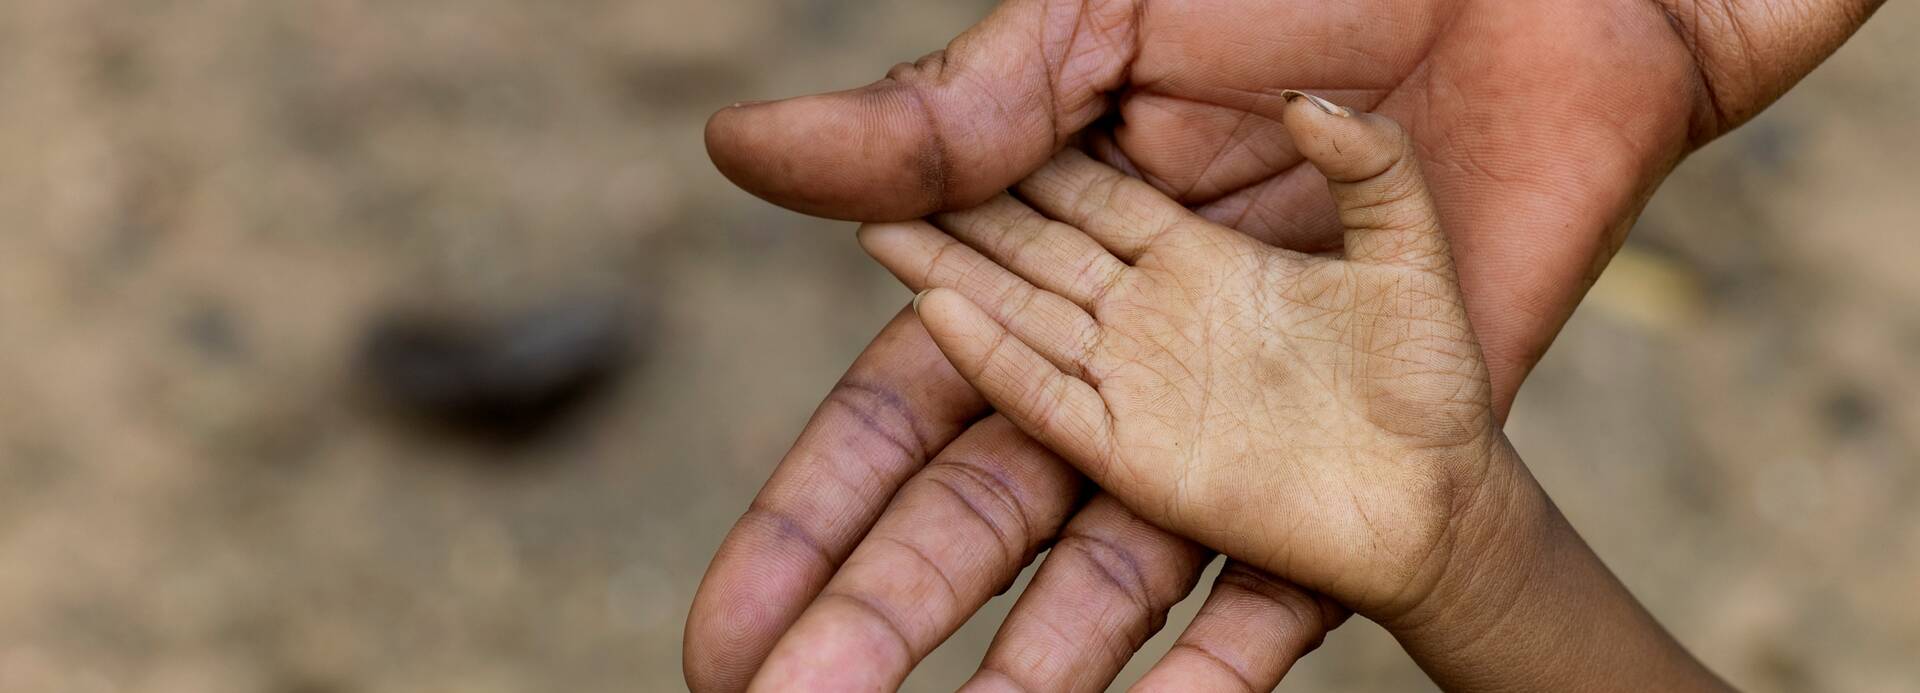 Eine Kinderhand liegt in der Hand eines Erwachsenen.